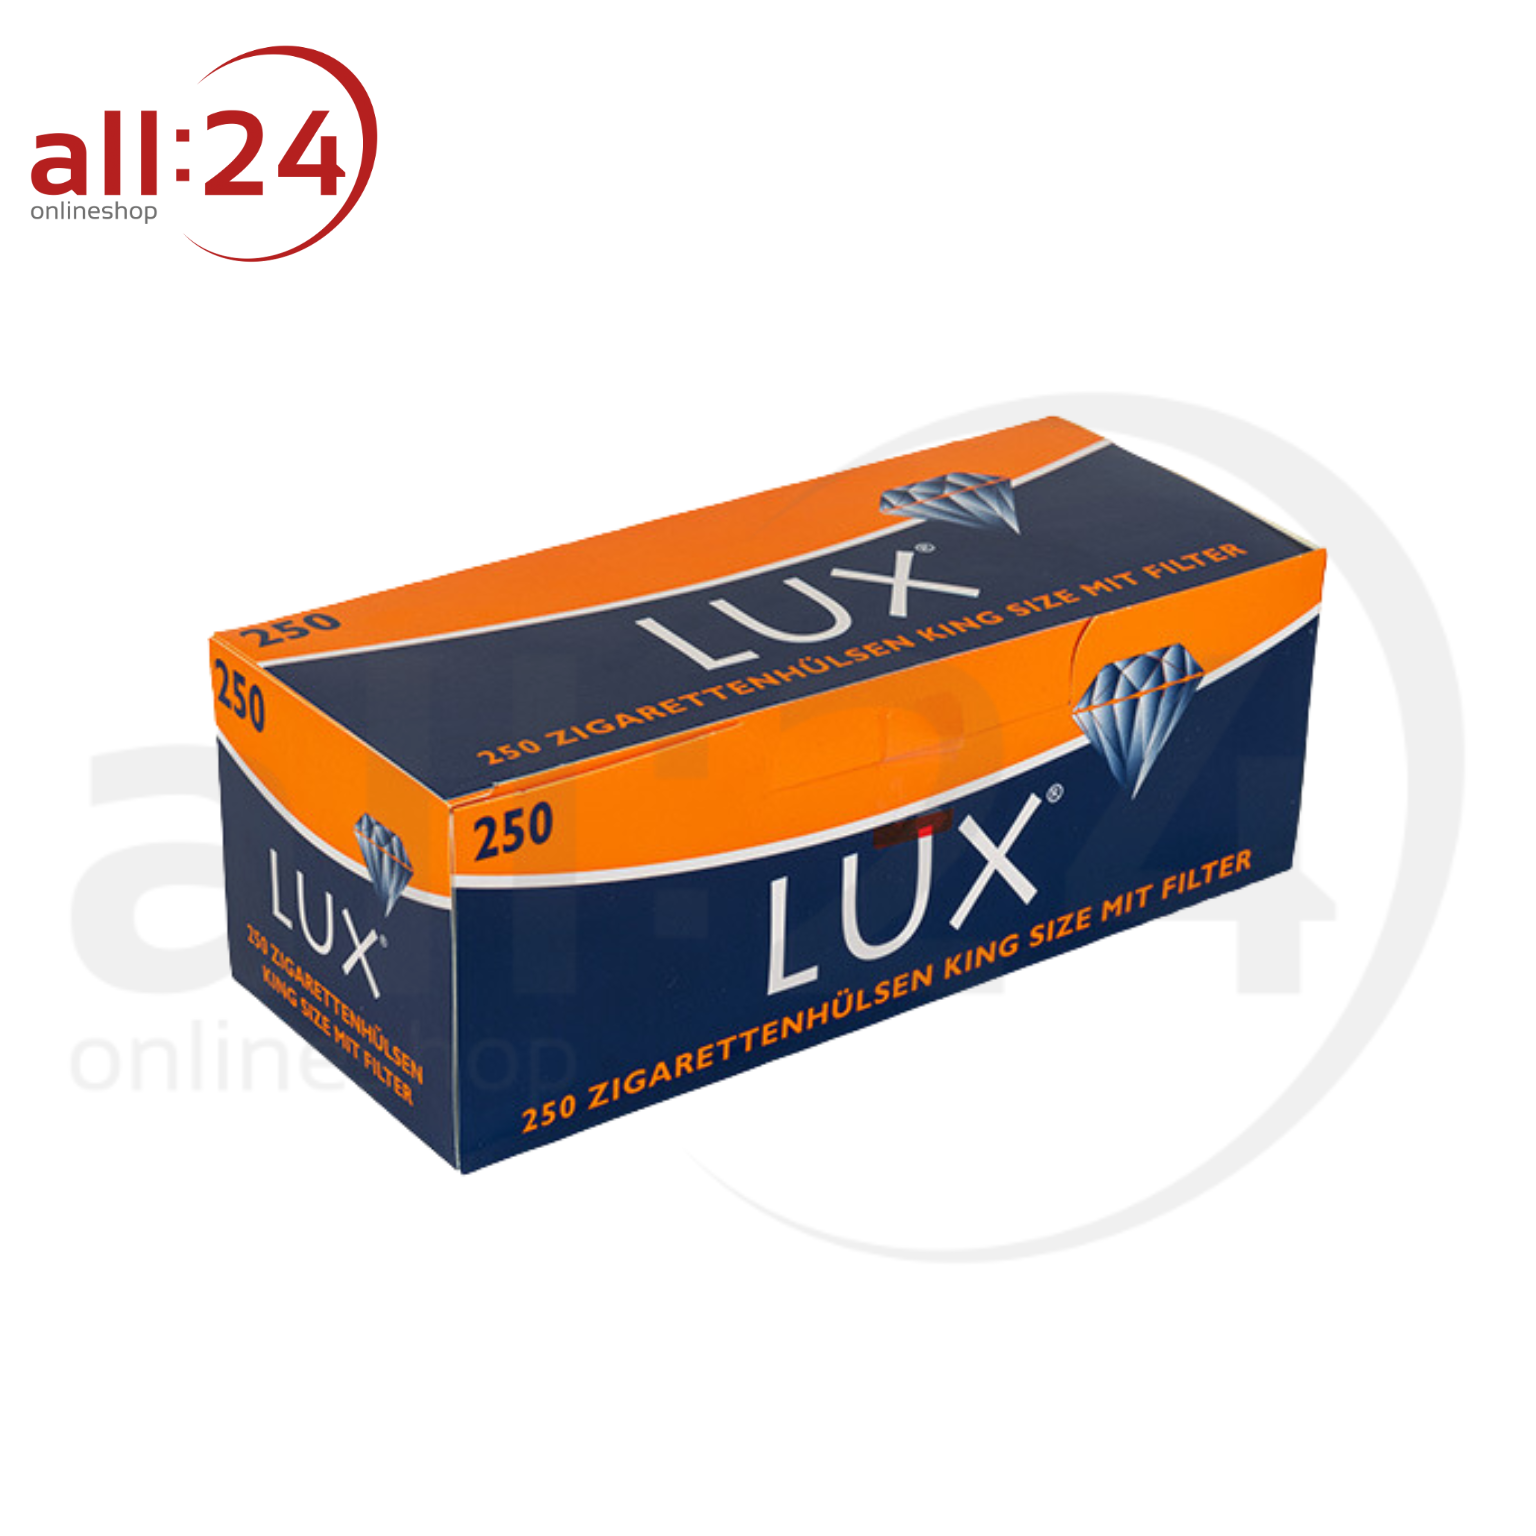 LUX Zigarettenhülsen - Packung mit 250 Stück 